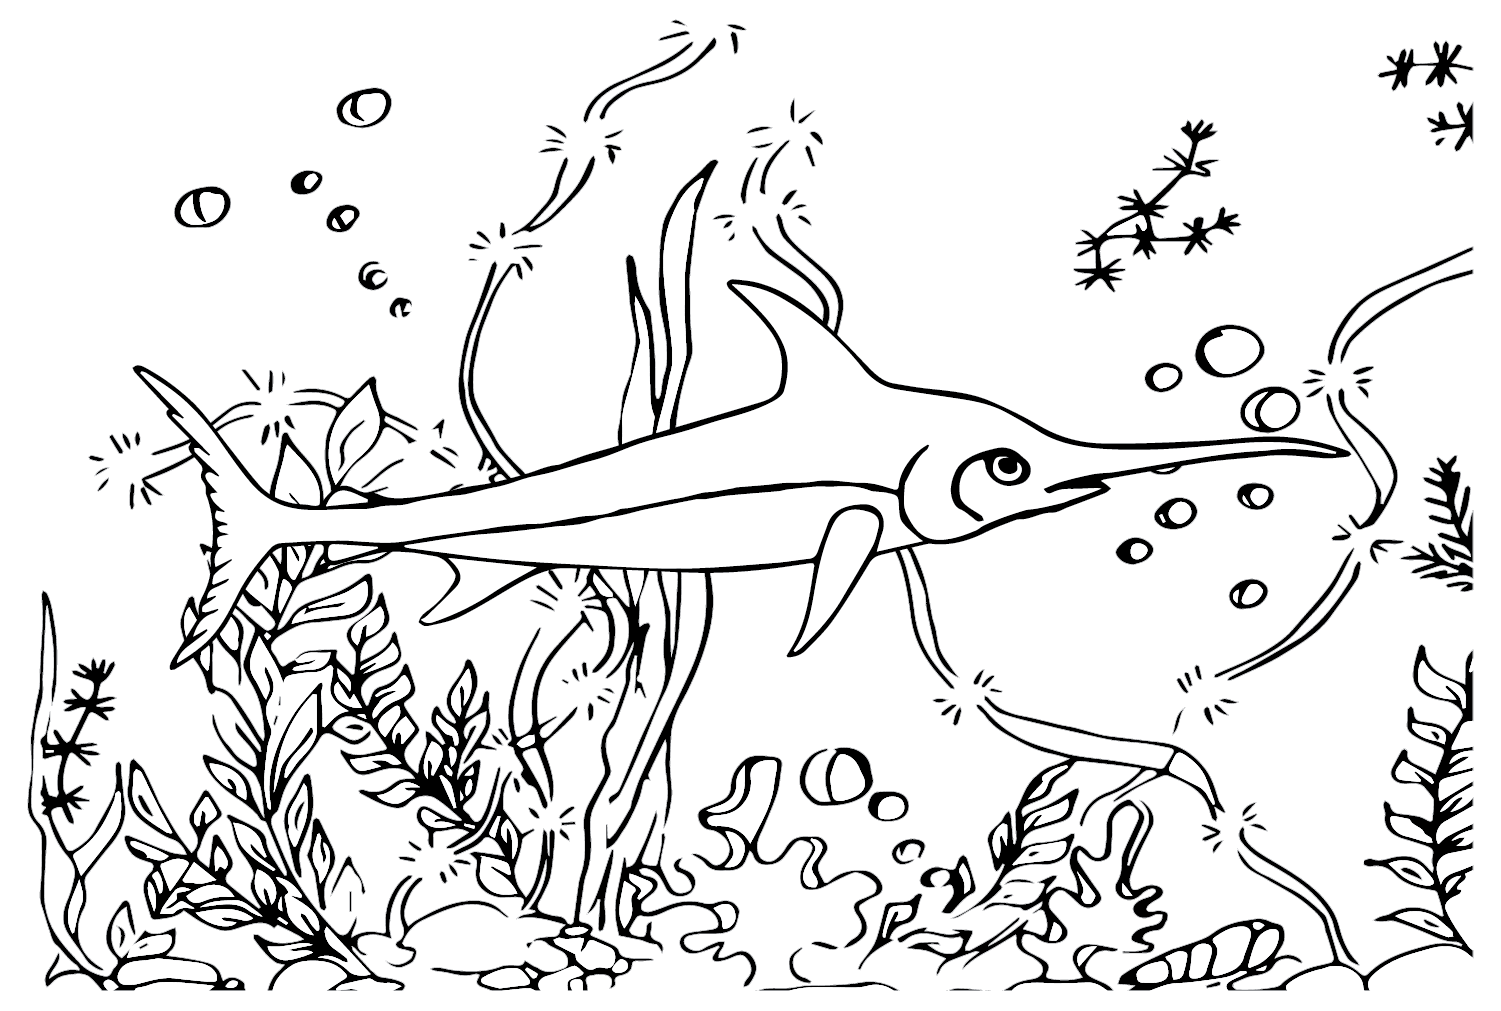 Desenhado à mão de peixe-espada from Peixe-espada